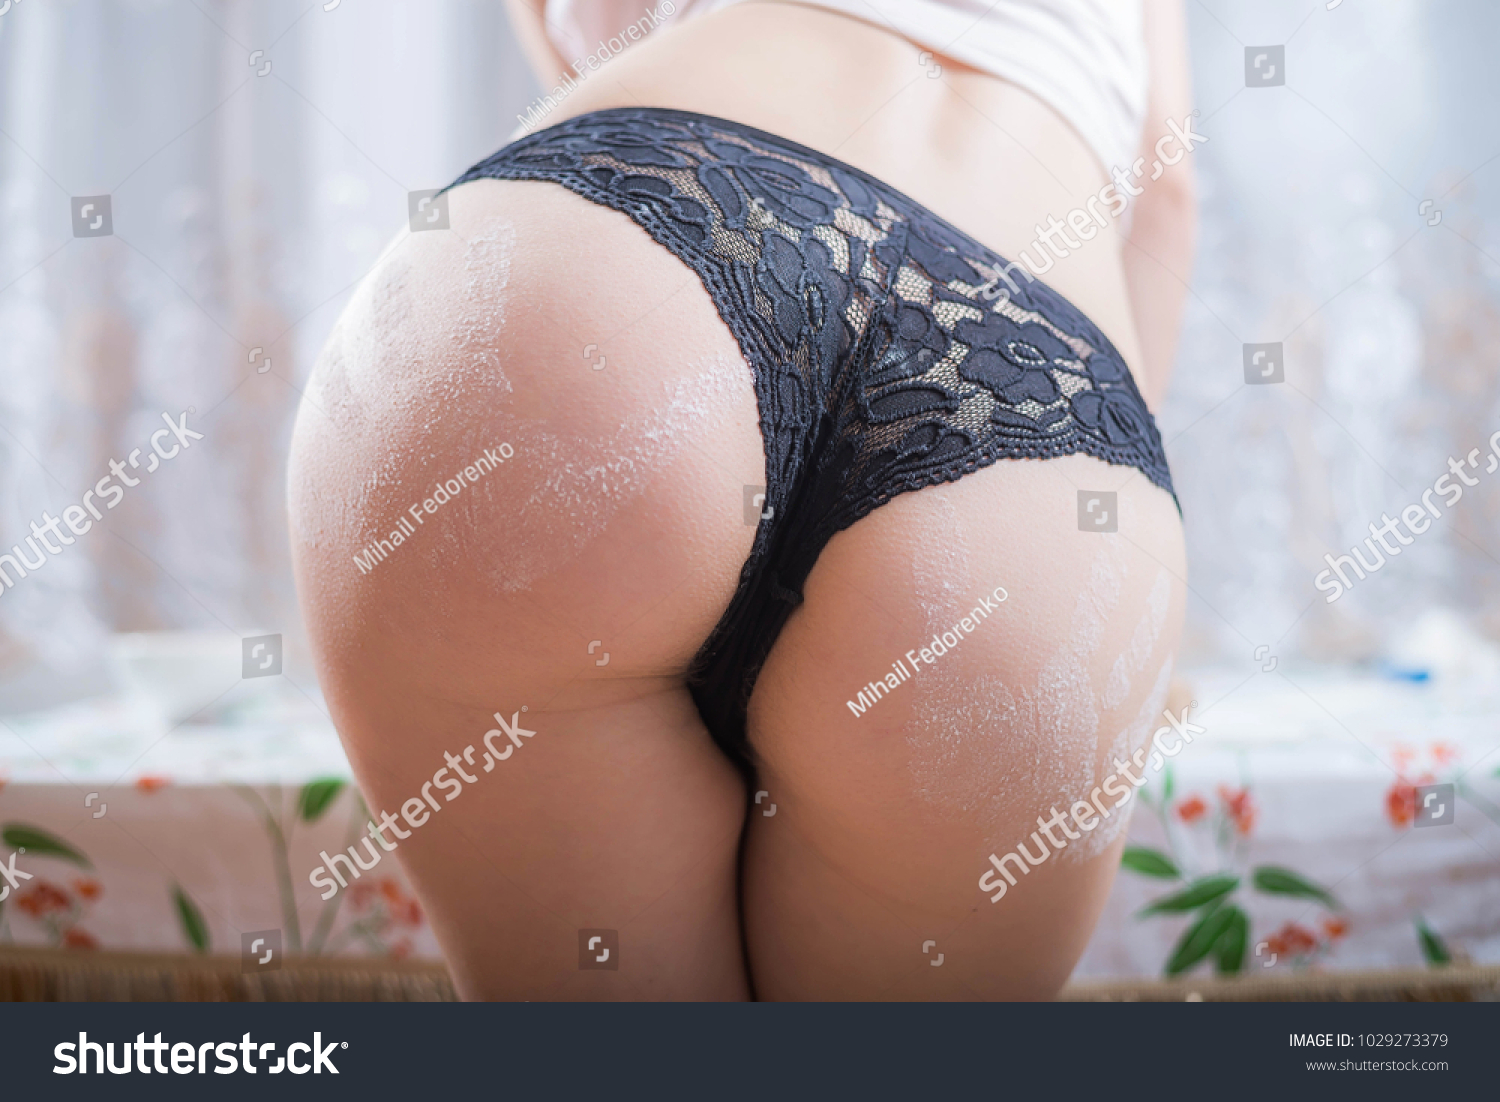 Sexy Panty Ass Pics